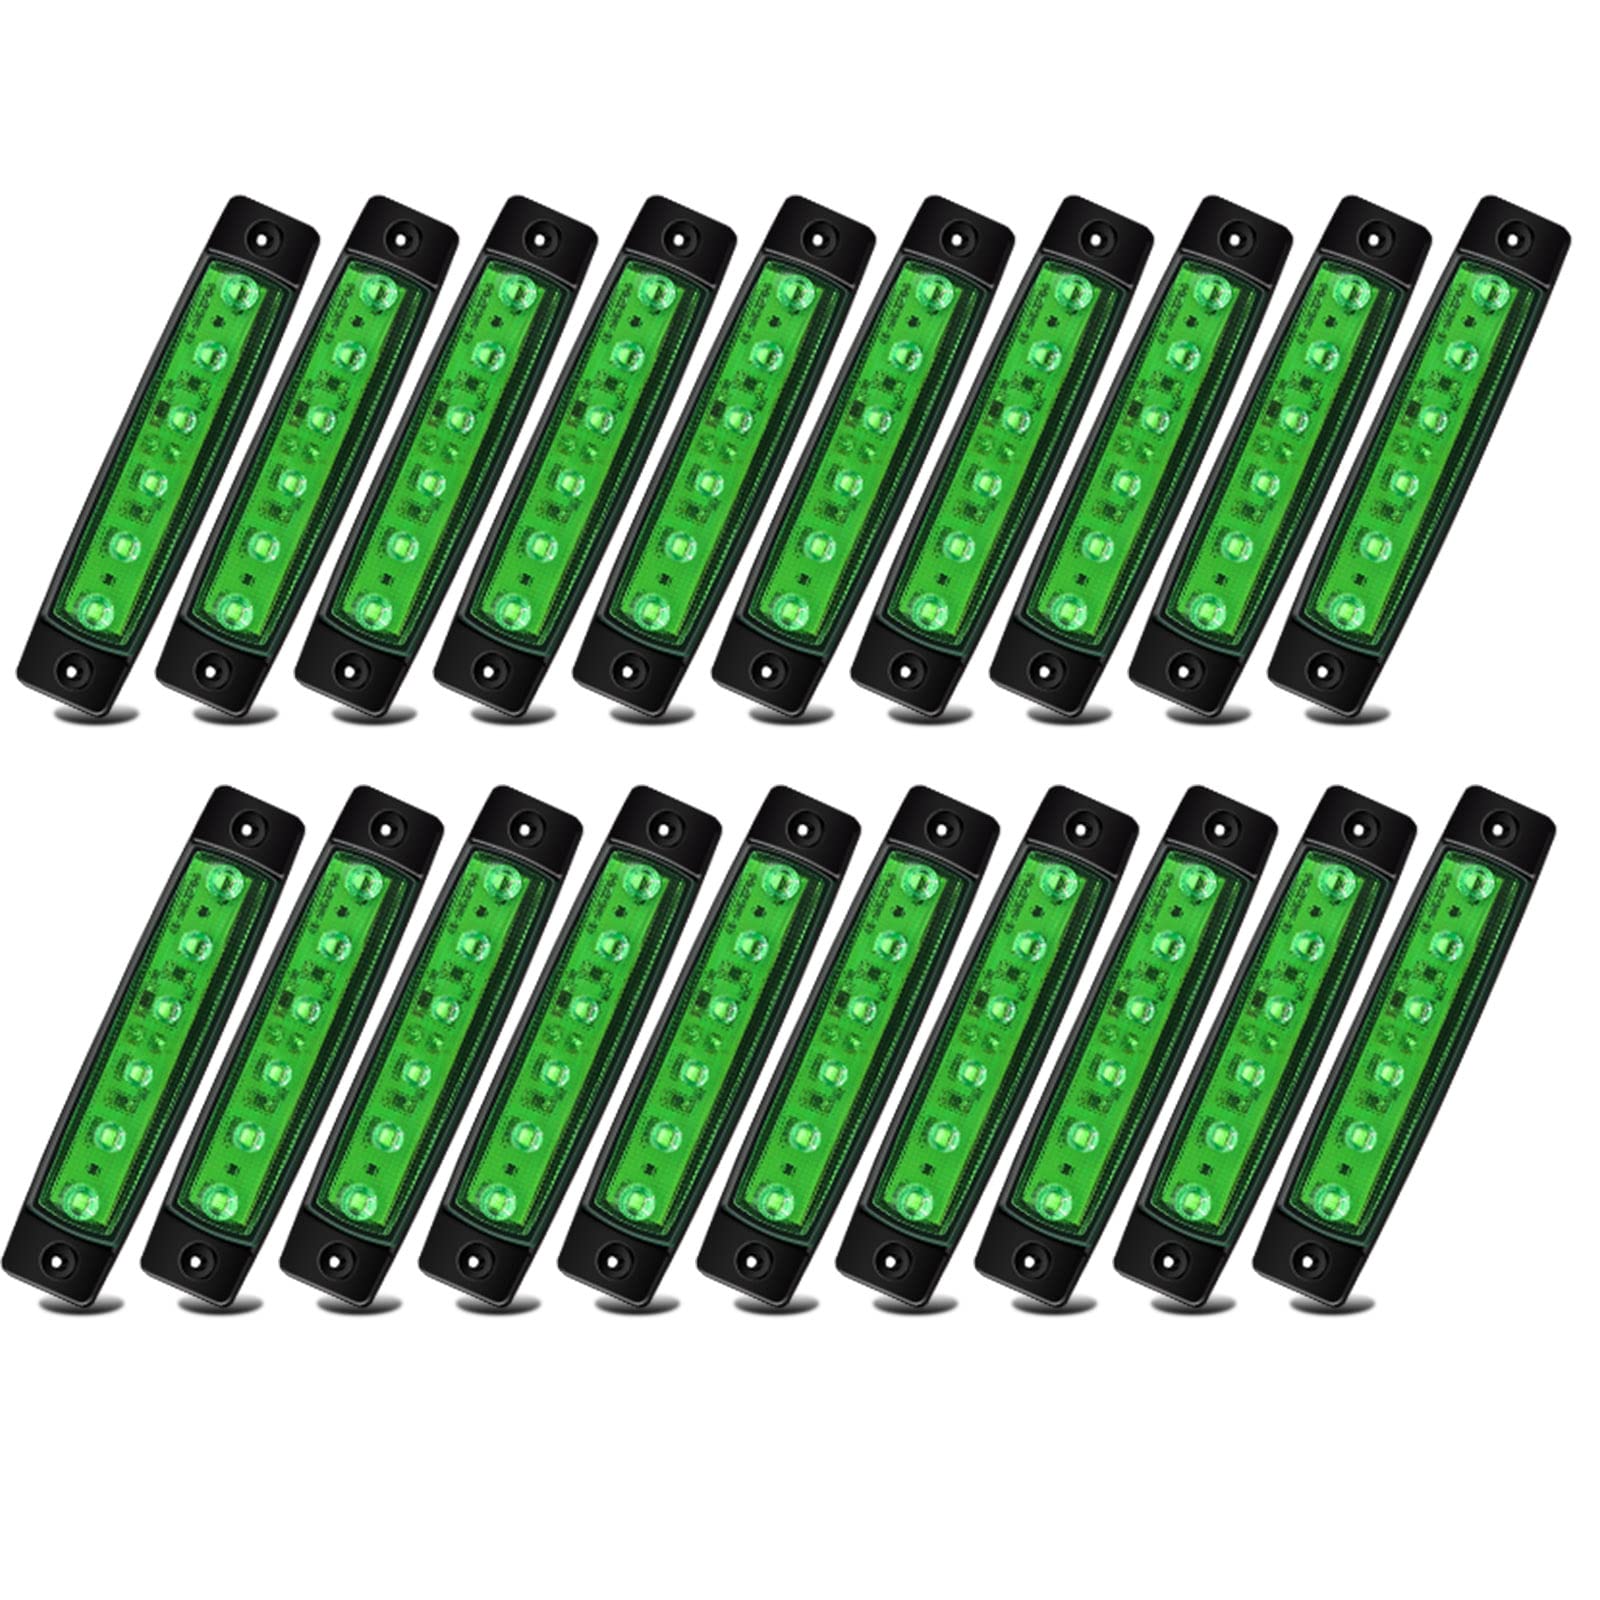 20 Stück 24 V LED-Seitenmarkierungsleuchten, grüne LED-Seitenmarkierungsleuchten für vorne und hinten, für Anhänger, LKWs, Lieferwagen, Anhänger, LKW von Biqing